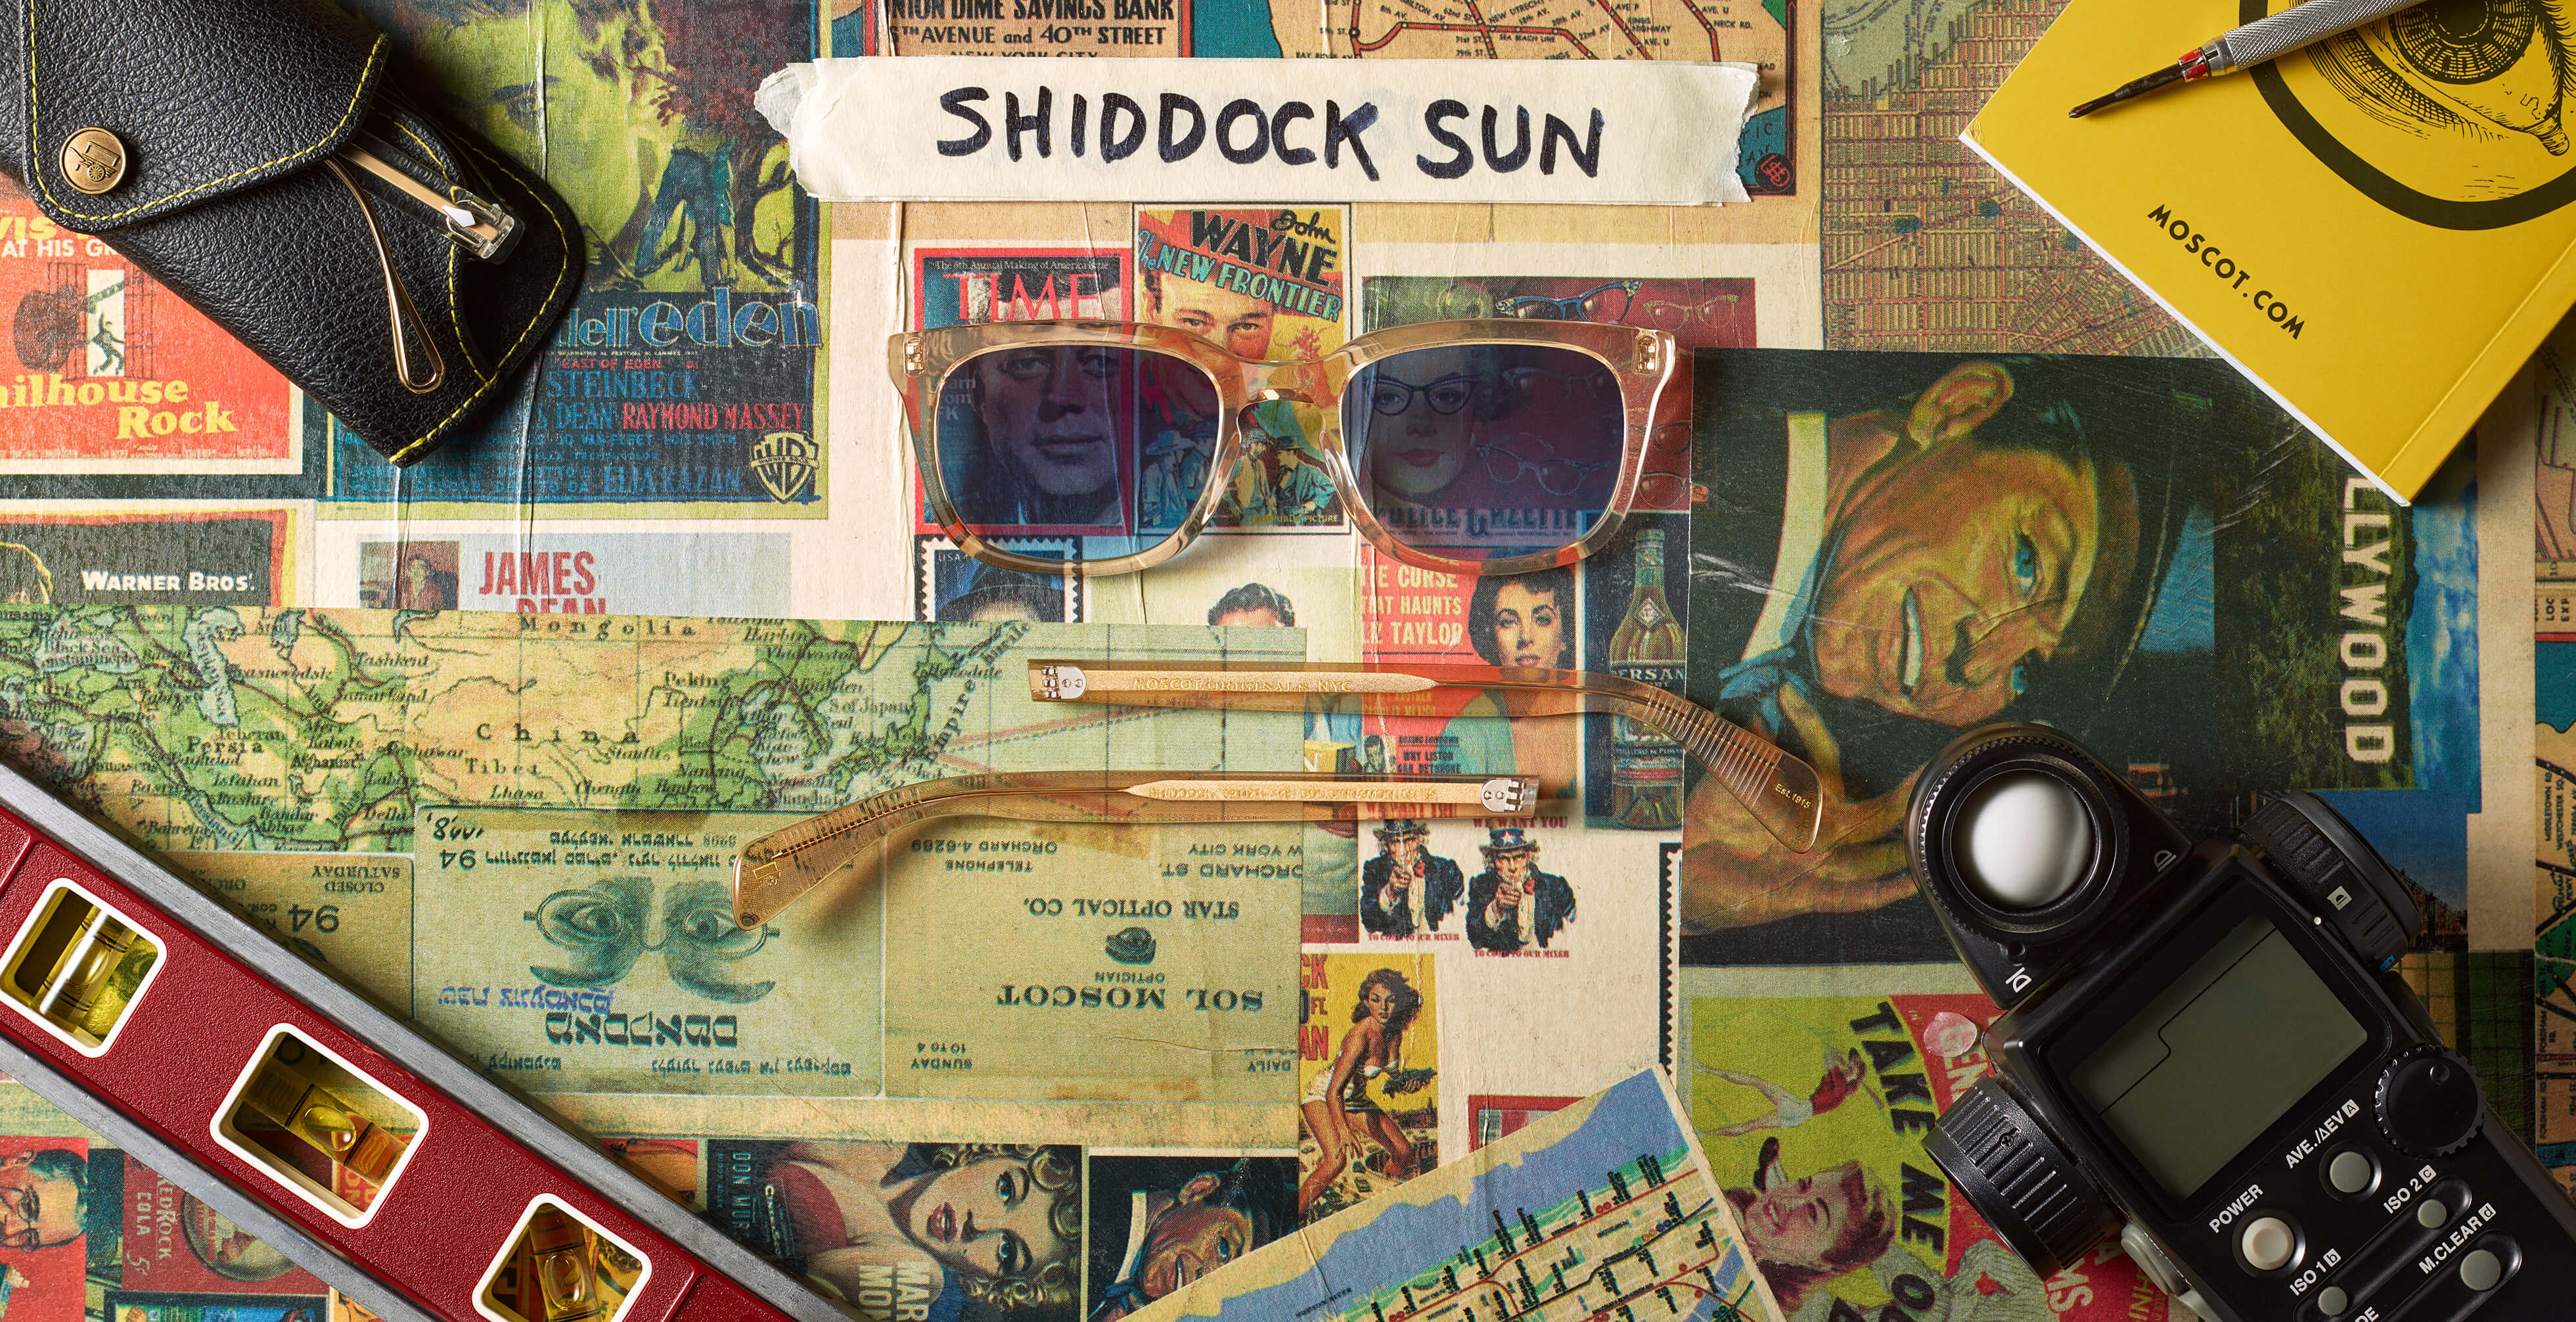 The SHIDDOCK SUN